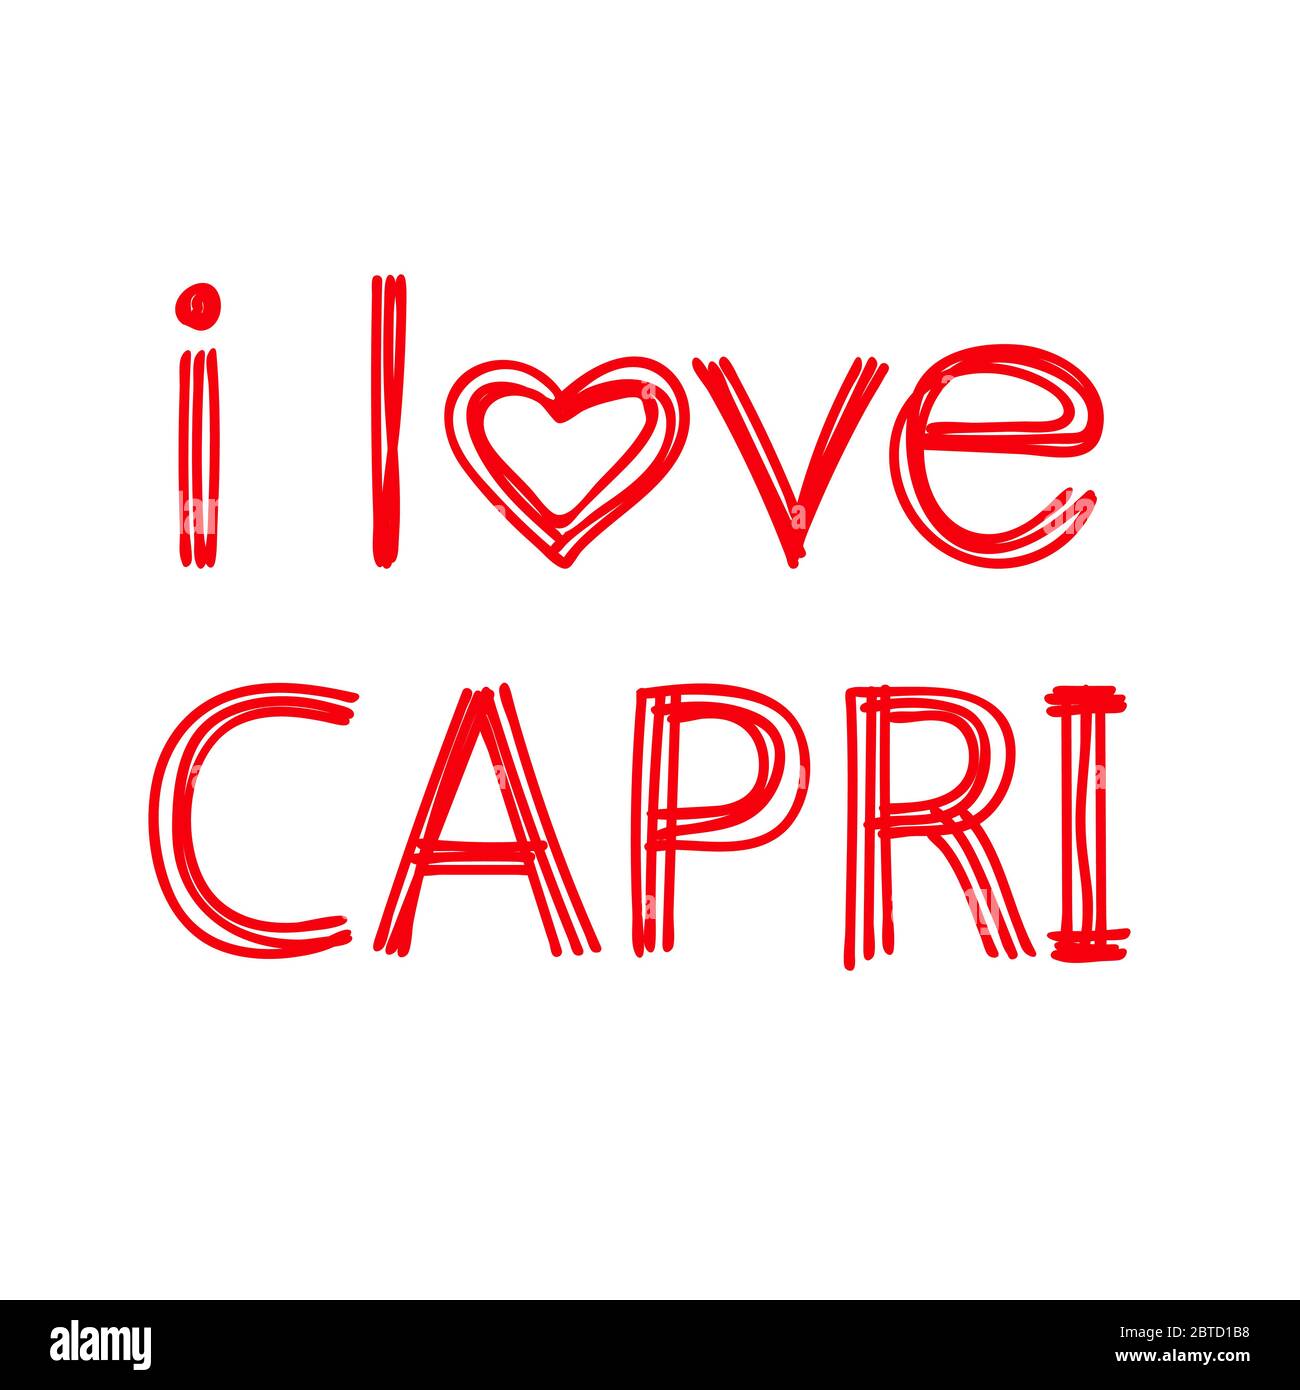 Ich liebe Capri. Isolieren Sie die geodelt rote Beschriftung von gekrümmten Linien wie von einem Filzstift oder einer Pensil. Capri ist ein Resort in Italien. Für Banner Stock Vektor